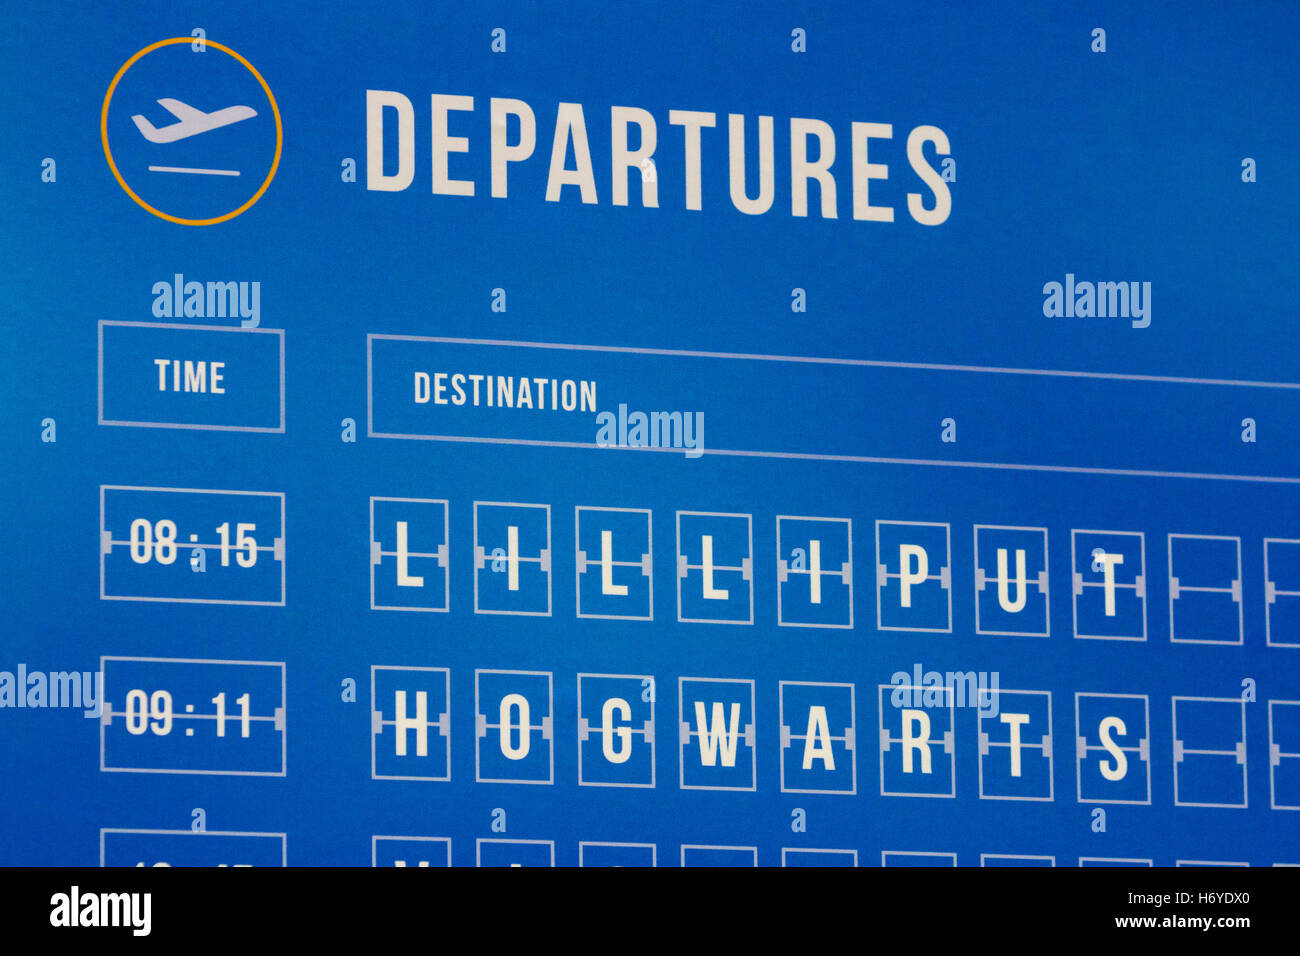 Un aeroporto calendario partenze con luoghi fictional (Lilliput e Hogwarts) Foto Stock